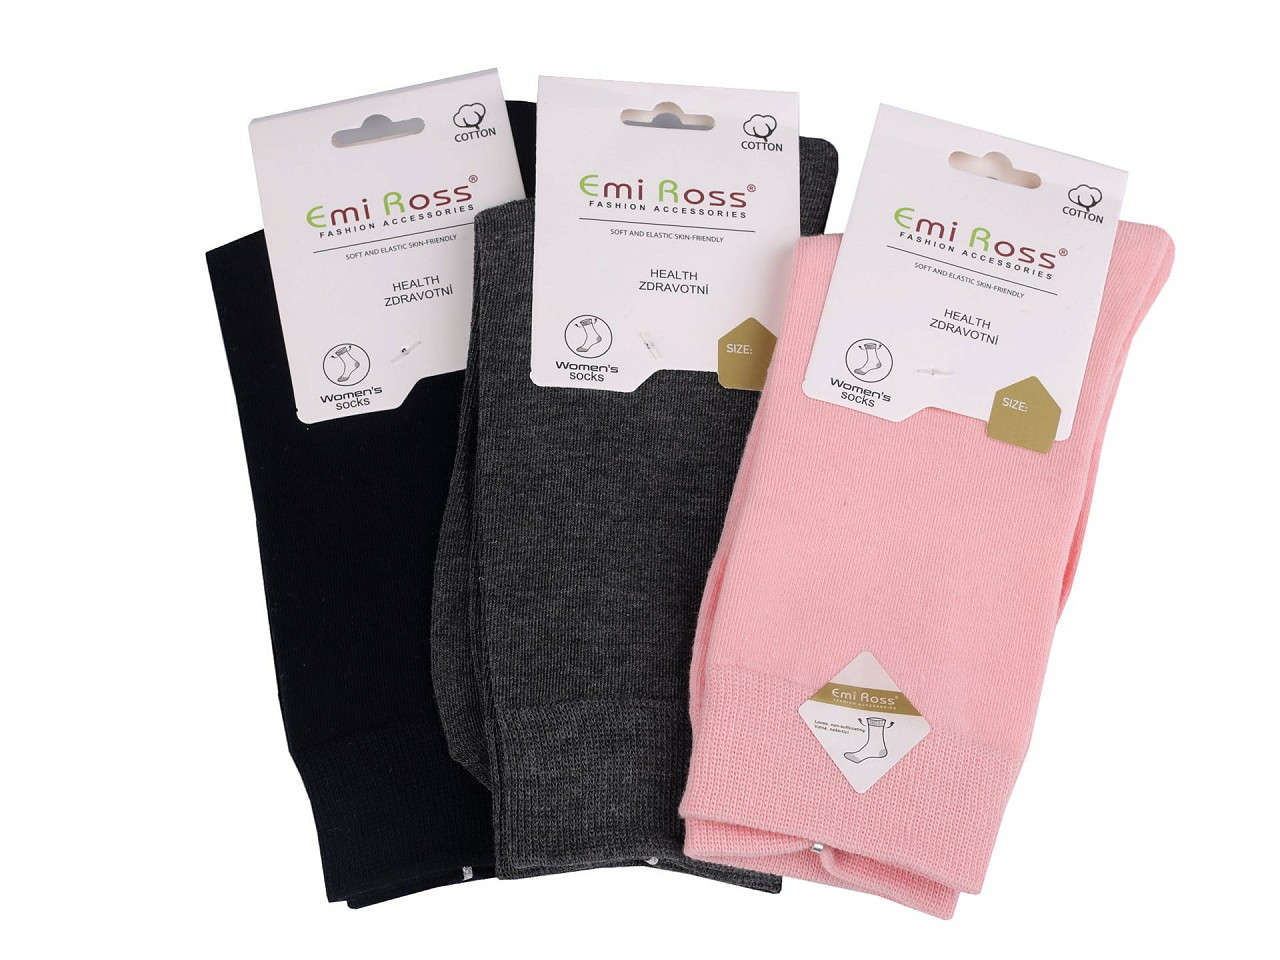 Dámské bavlněné ponožky Emi Ross, barva 10 (35-38) mix